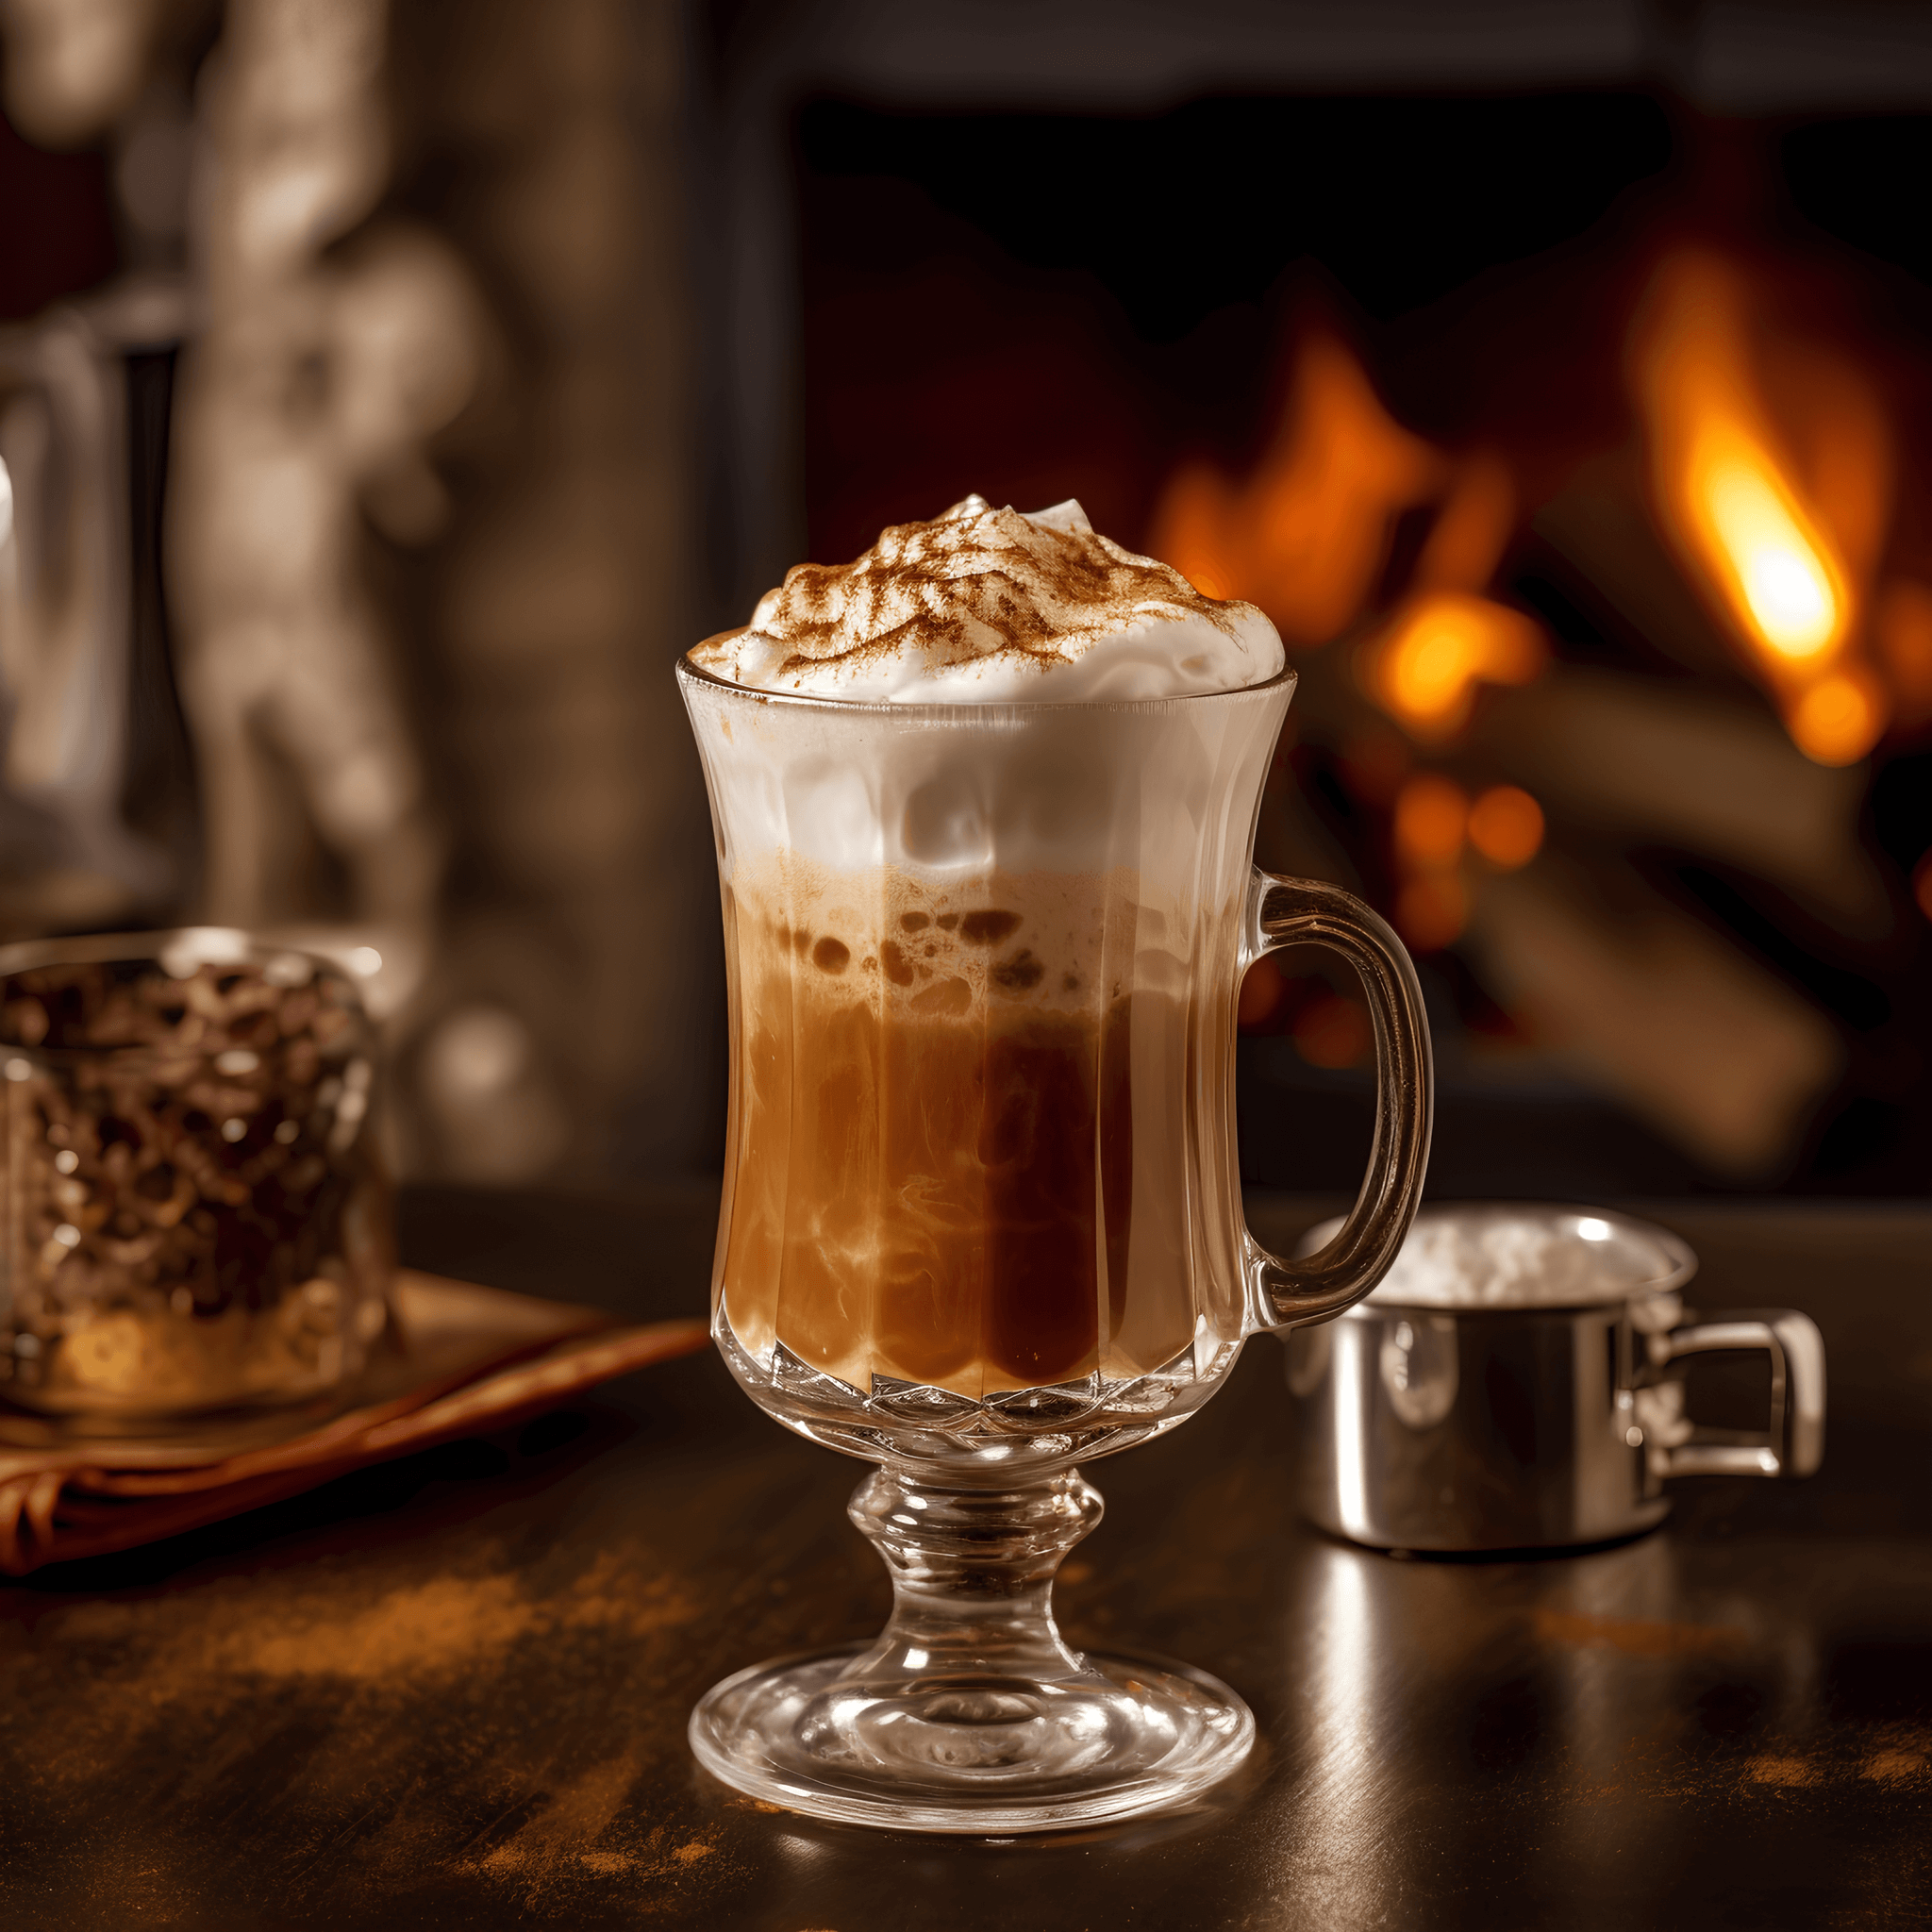 El Irish Coffee es un cóctel cálido, rico y cremoso con un equilibrio perfecto de café amargo, azúcar dulce y suave whiskey irlandés. La crema batida agrega una textura lujosa y aterciopelada.